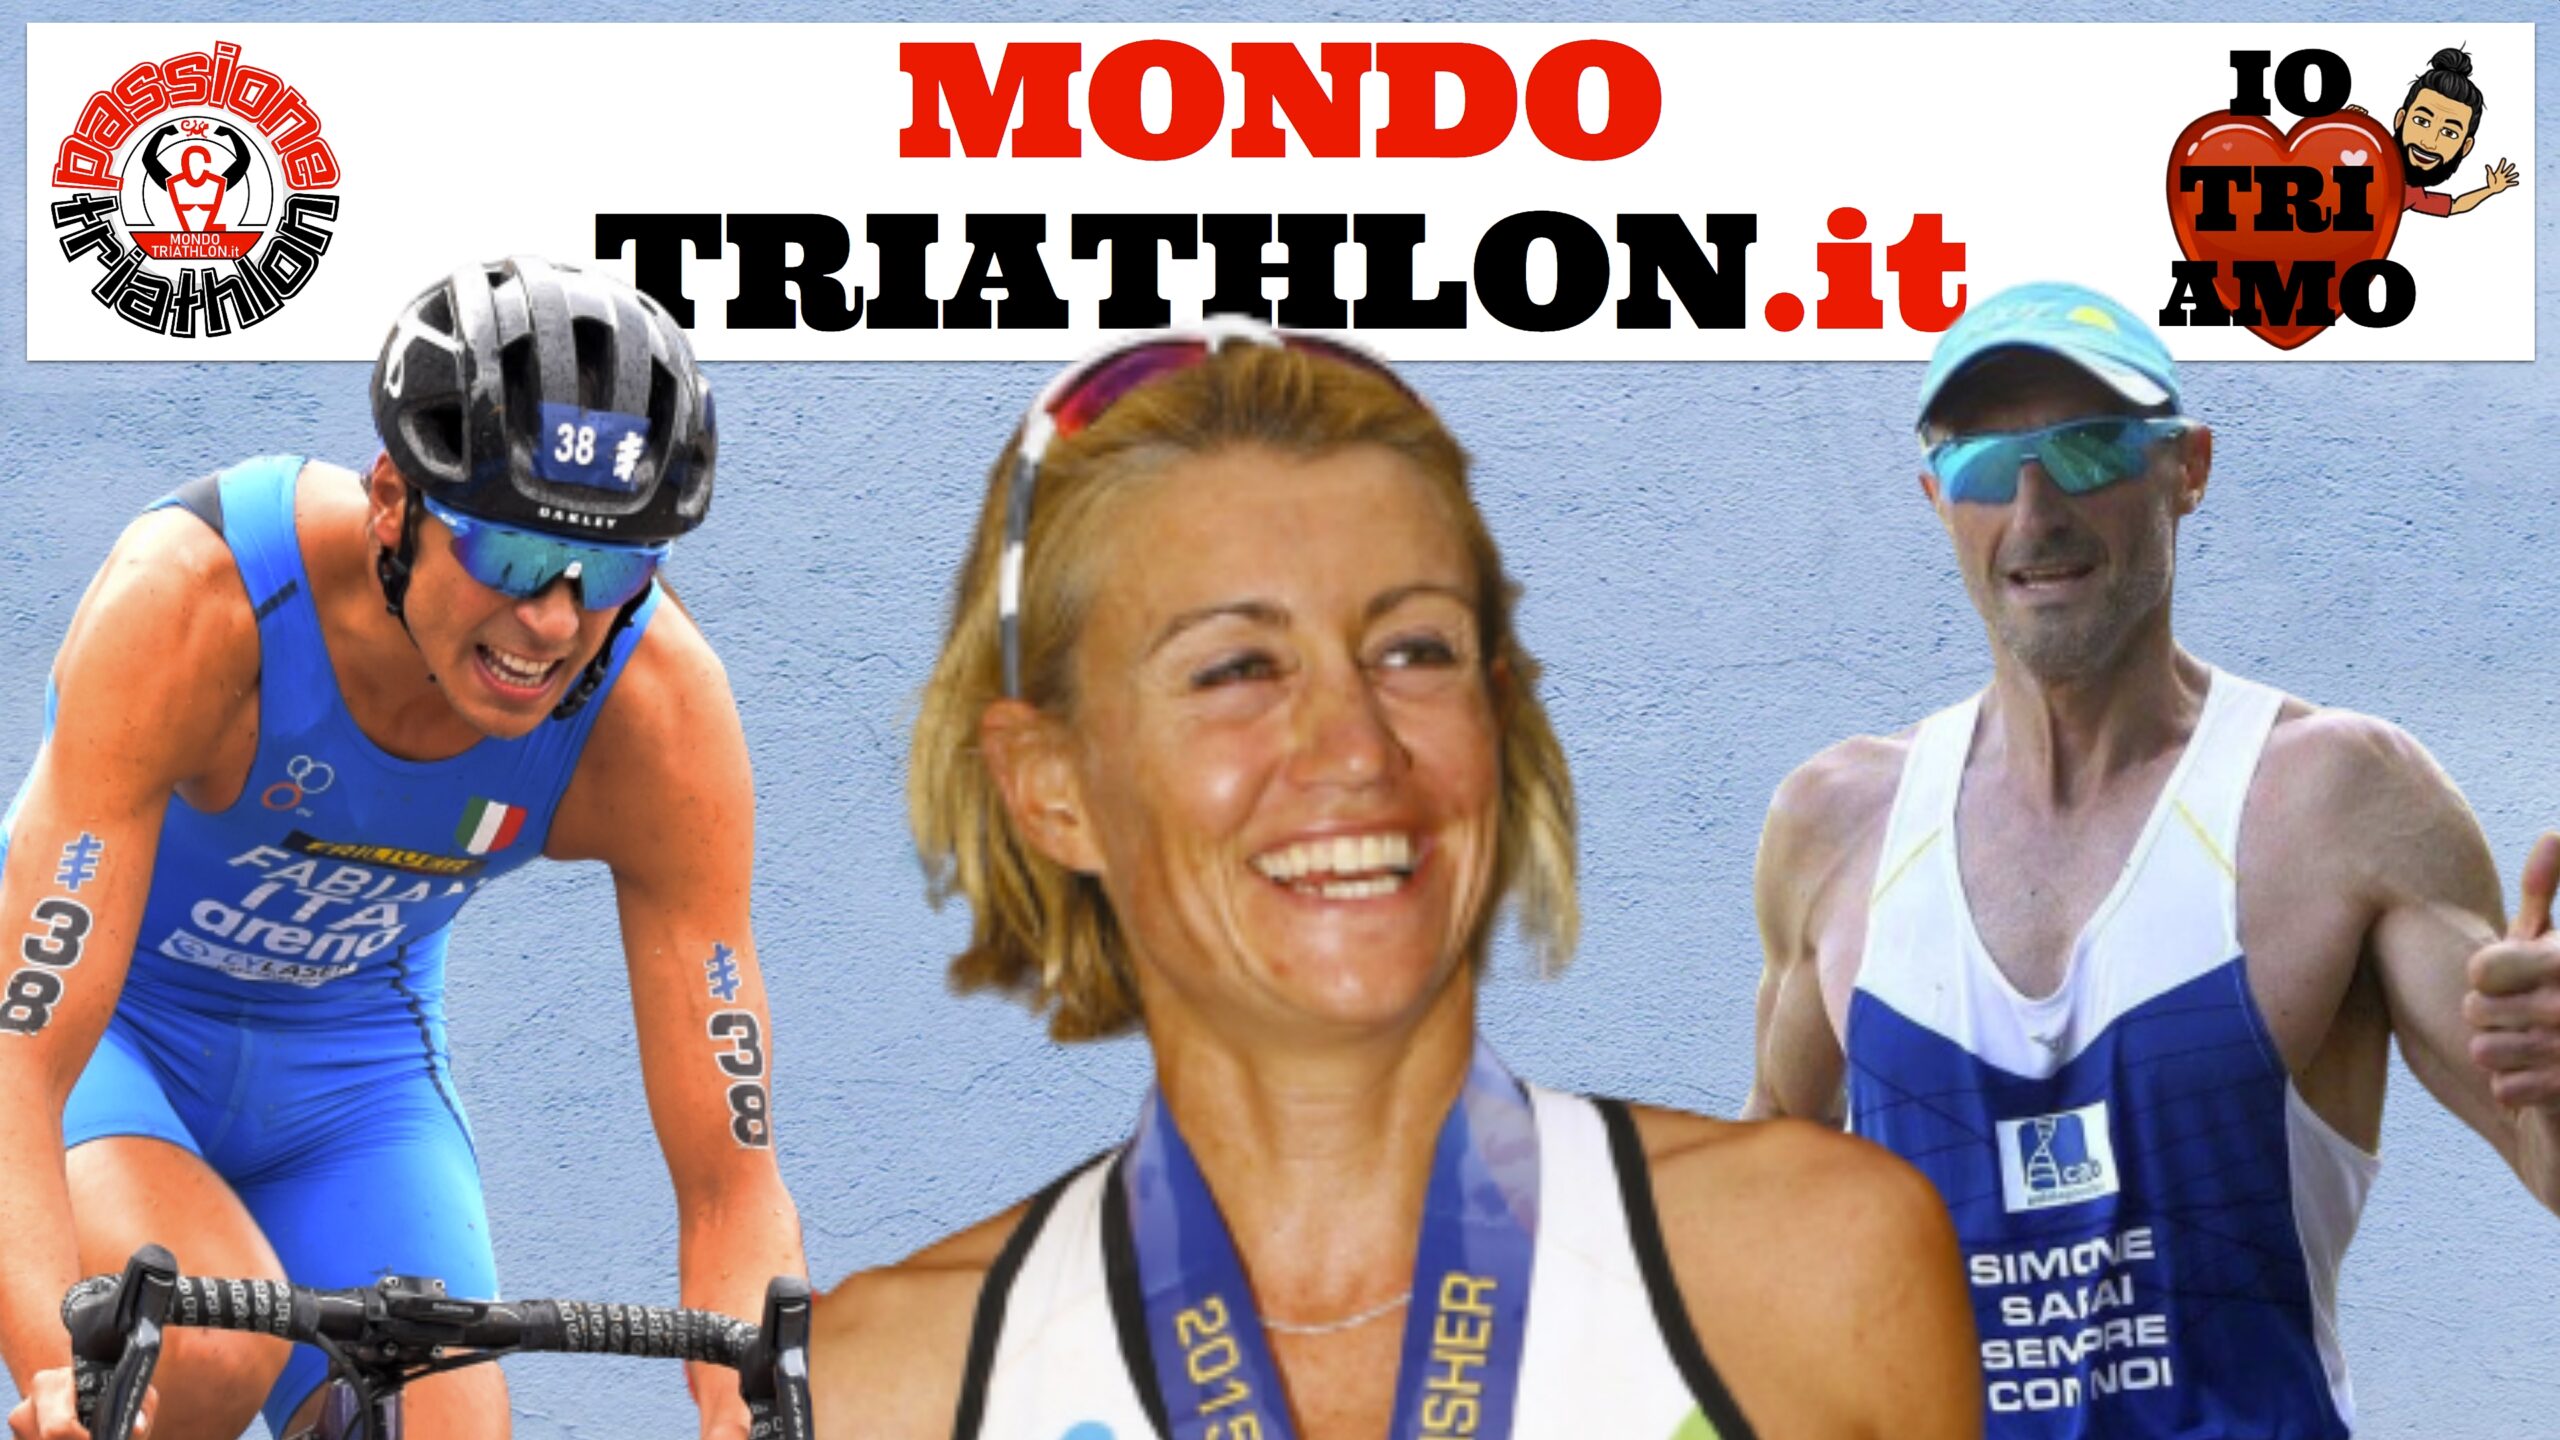 Passione Triathlon, la copertina con i protagonisti dal 13 al 17 luglio 2020: Francesca Tibaldi, Alessandro Fabian, Amedeo Bonfanti